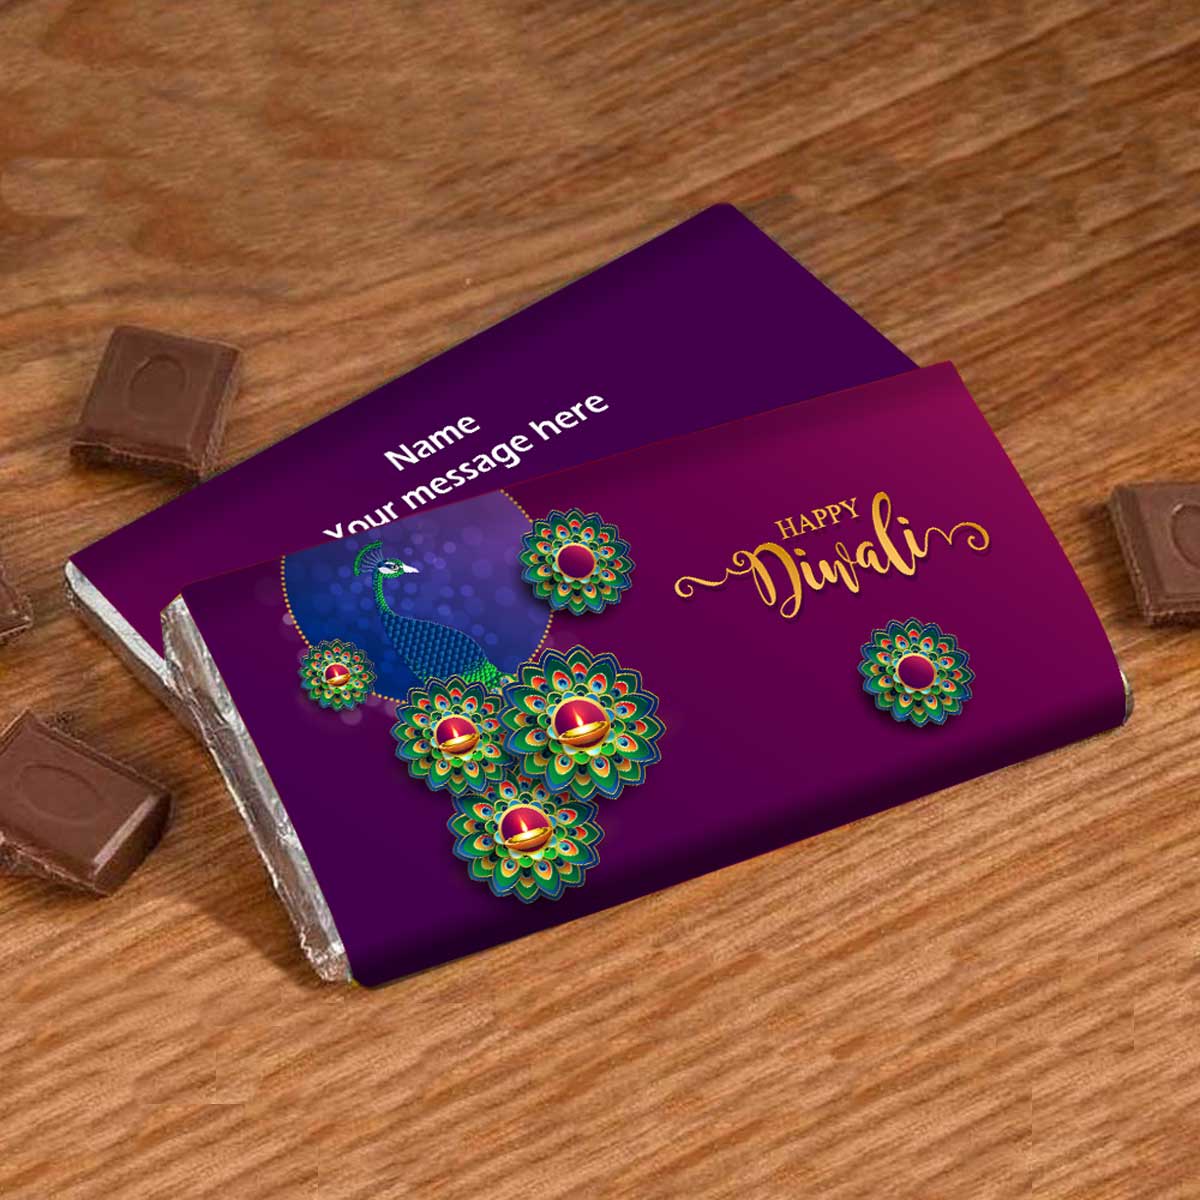 Personalised Happy Diwali - Diya-licious Choco Bar